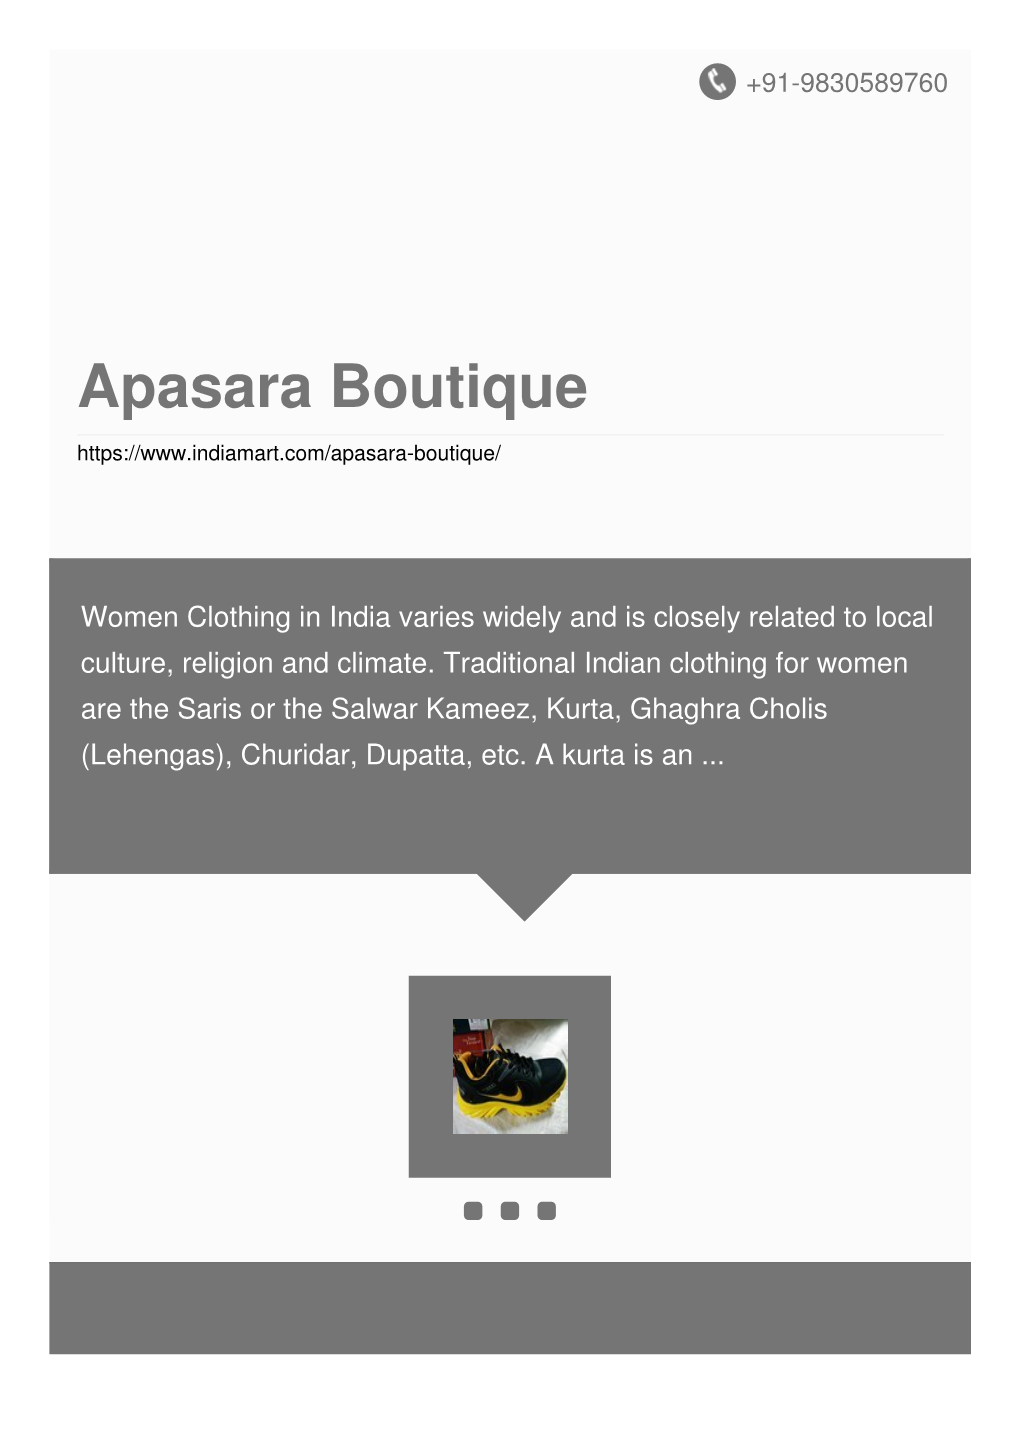 Apasara Boutique